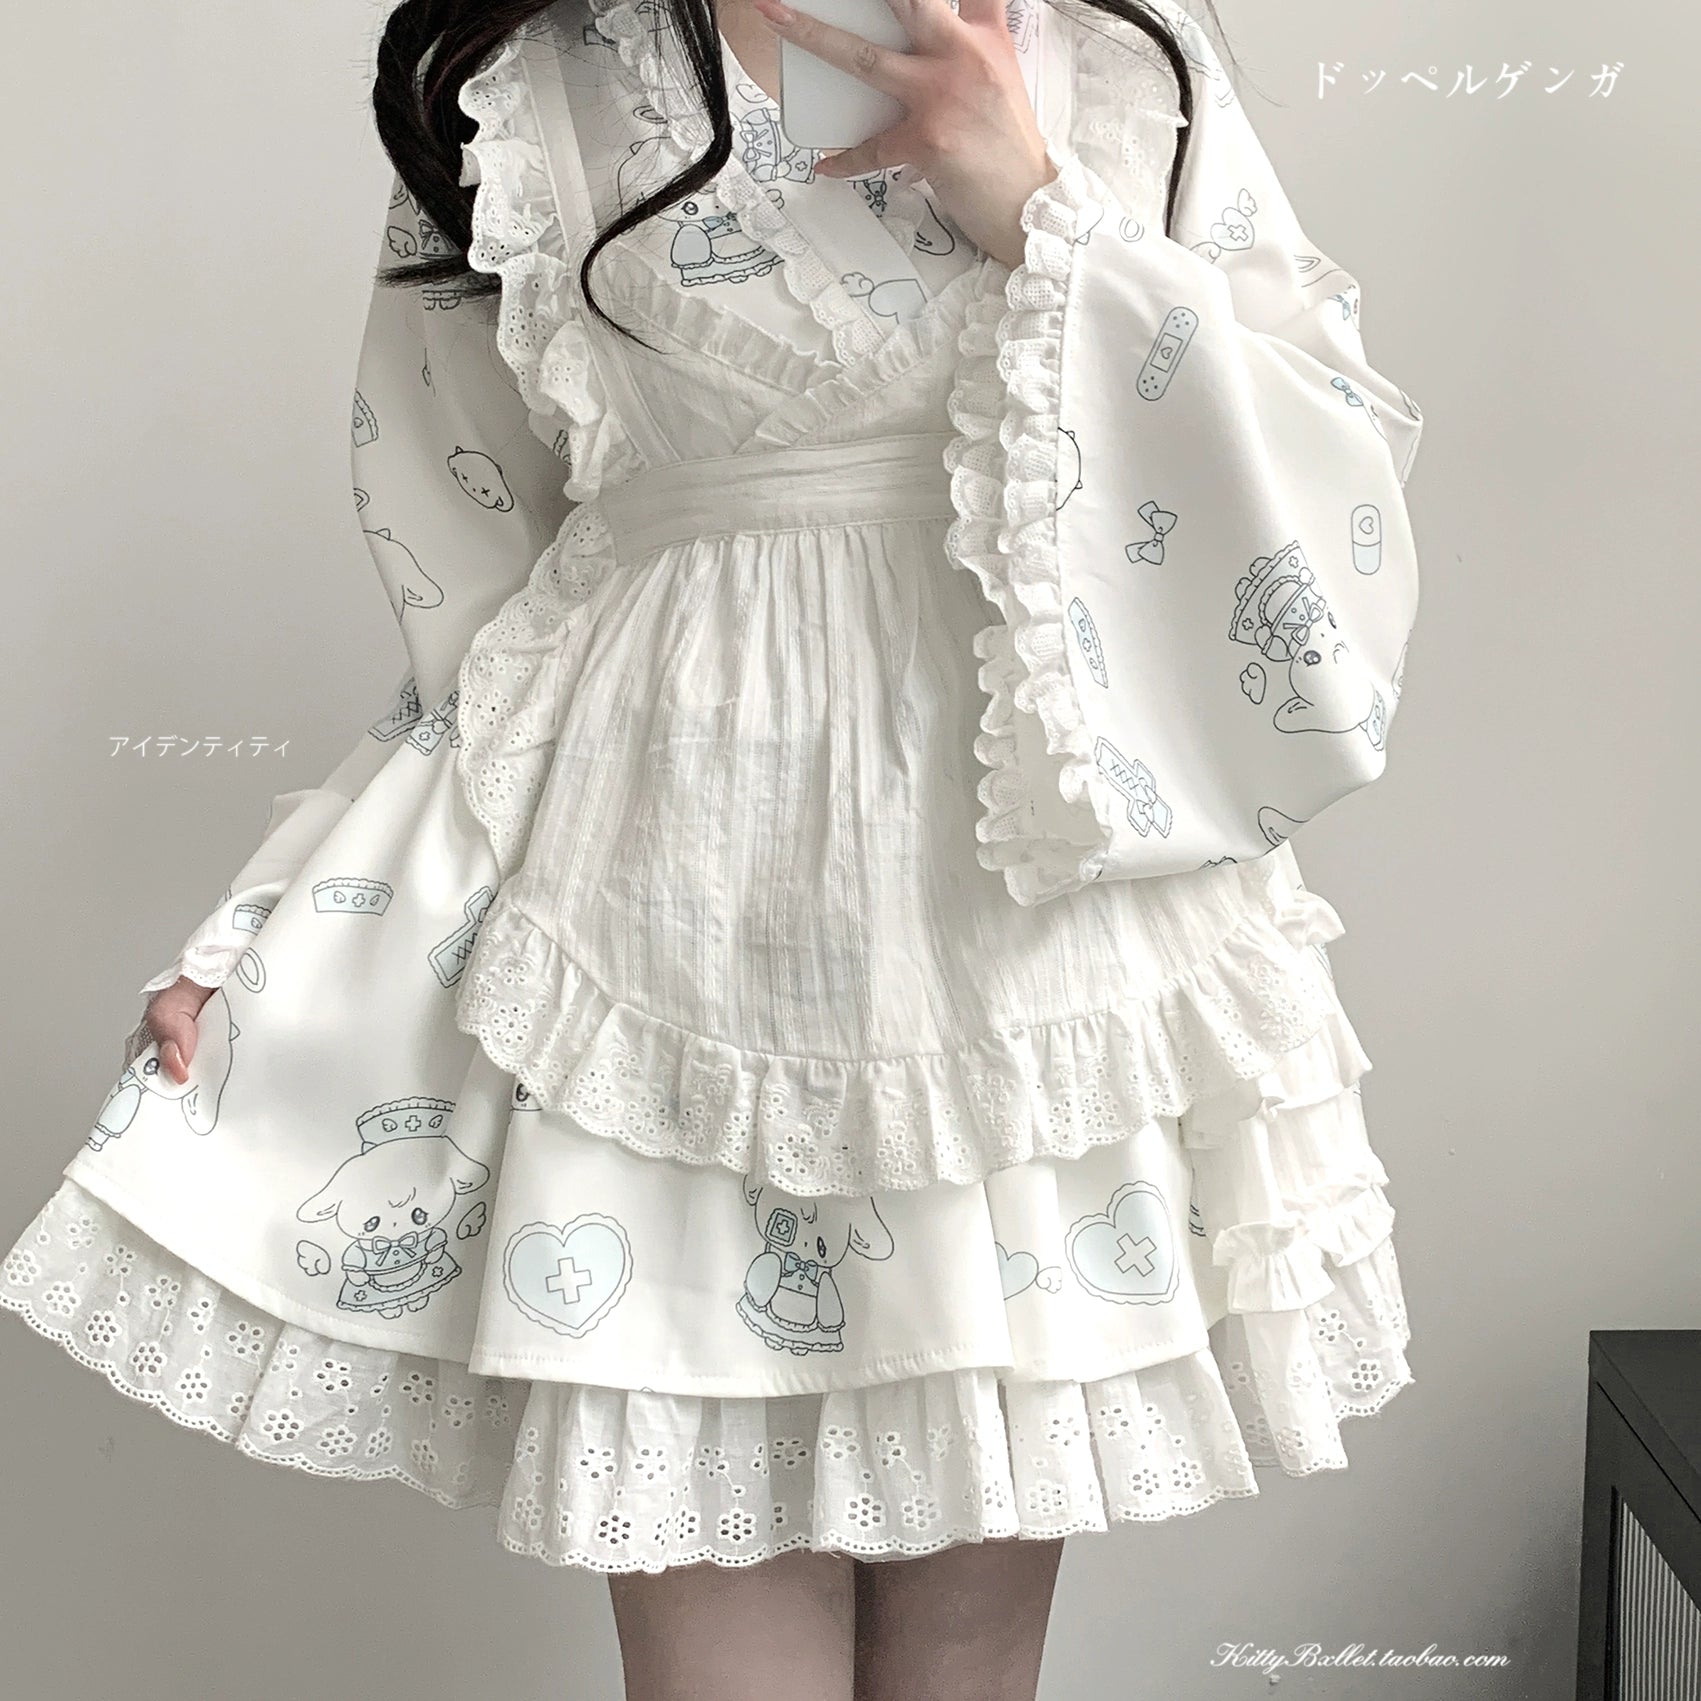 Tenshi Kaiwai Patchwork Skirt Kimono Top White Apron Three-Piece Set 36786:536664